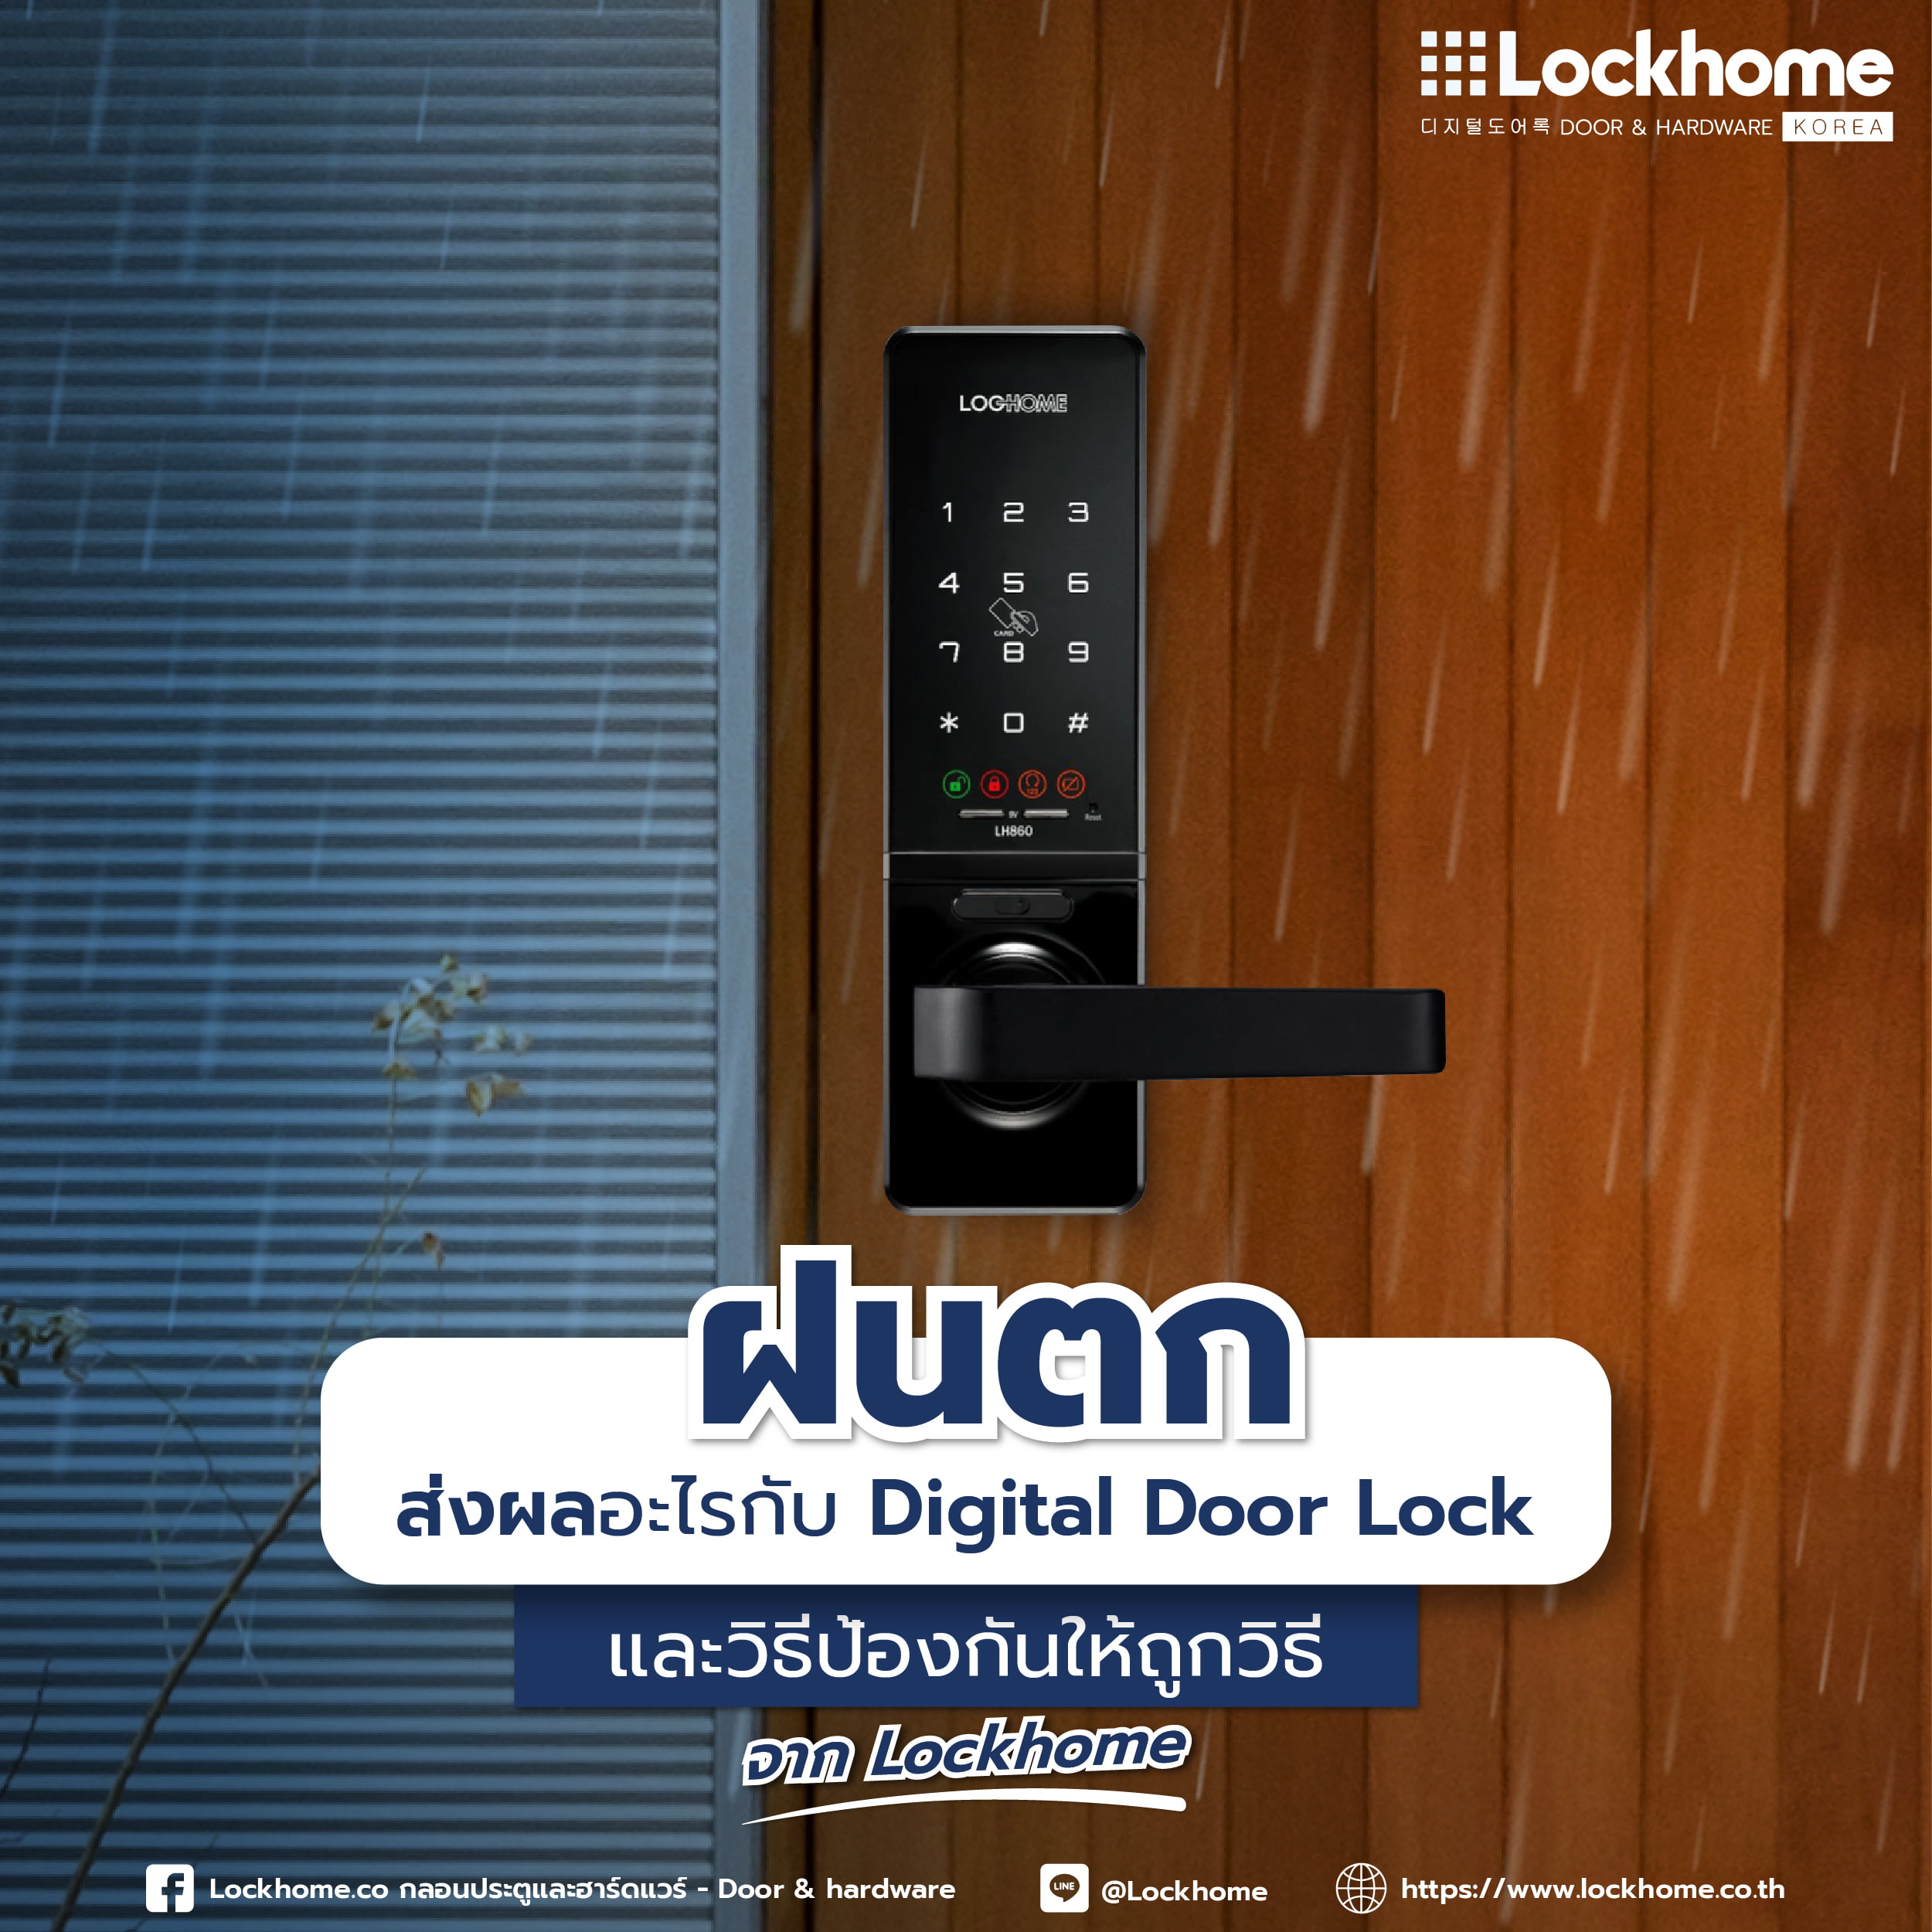 ฝนตกส่งผลอะไรกับ Digital Door Lock และวิธีป้องกันให้ถูกวิธี